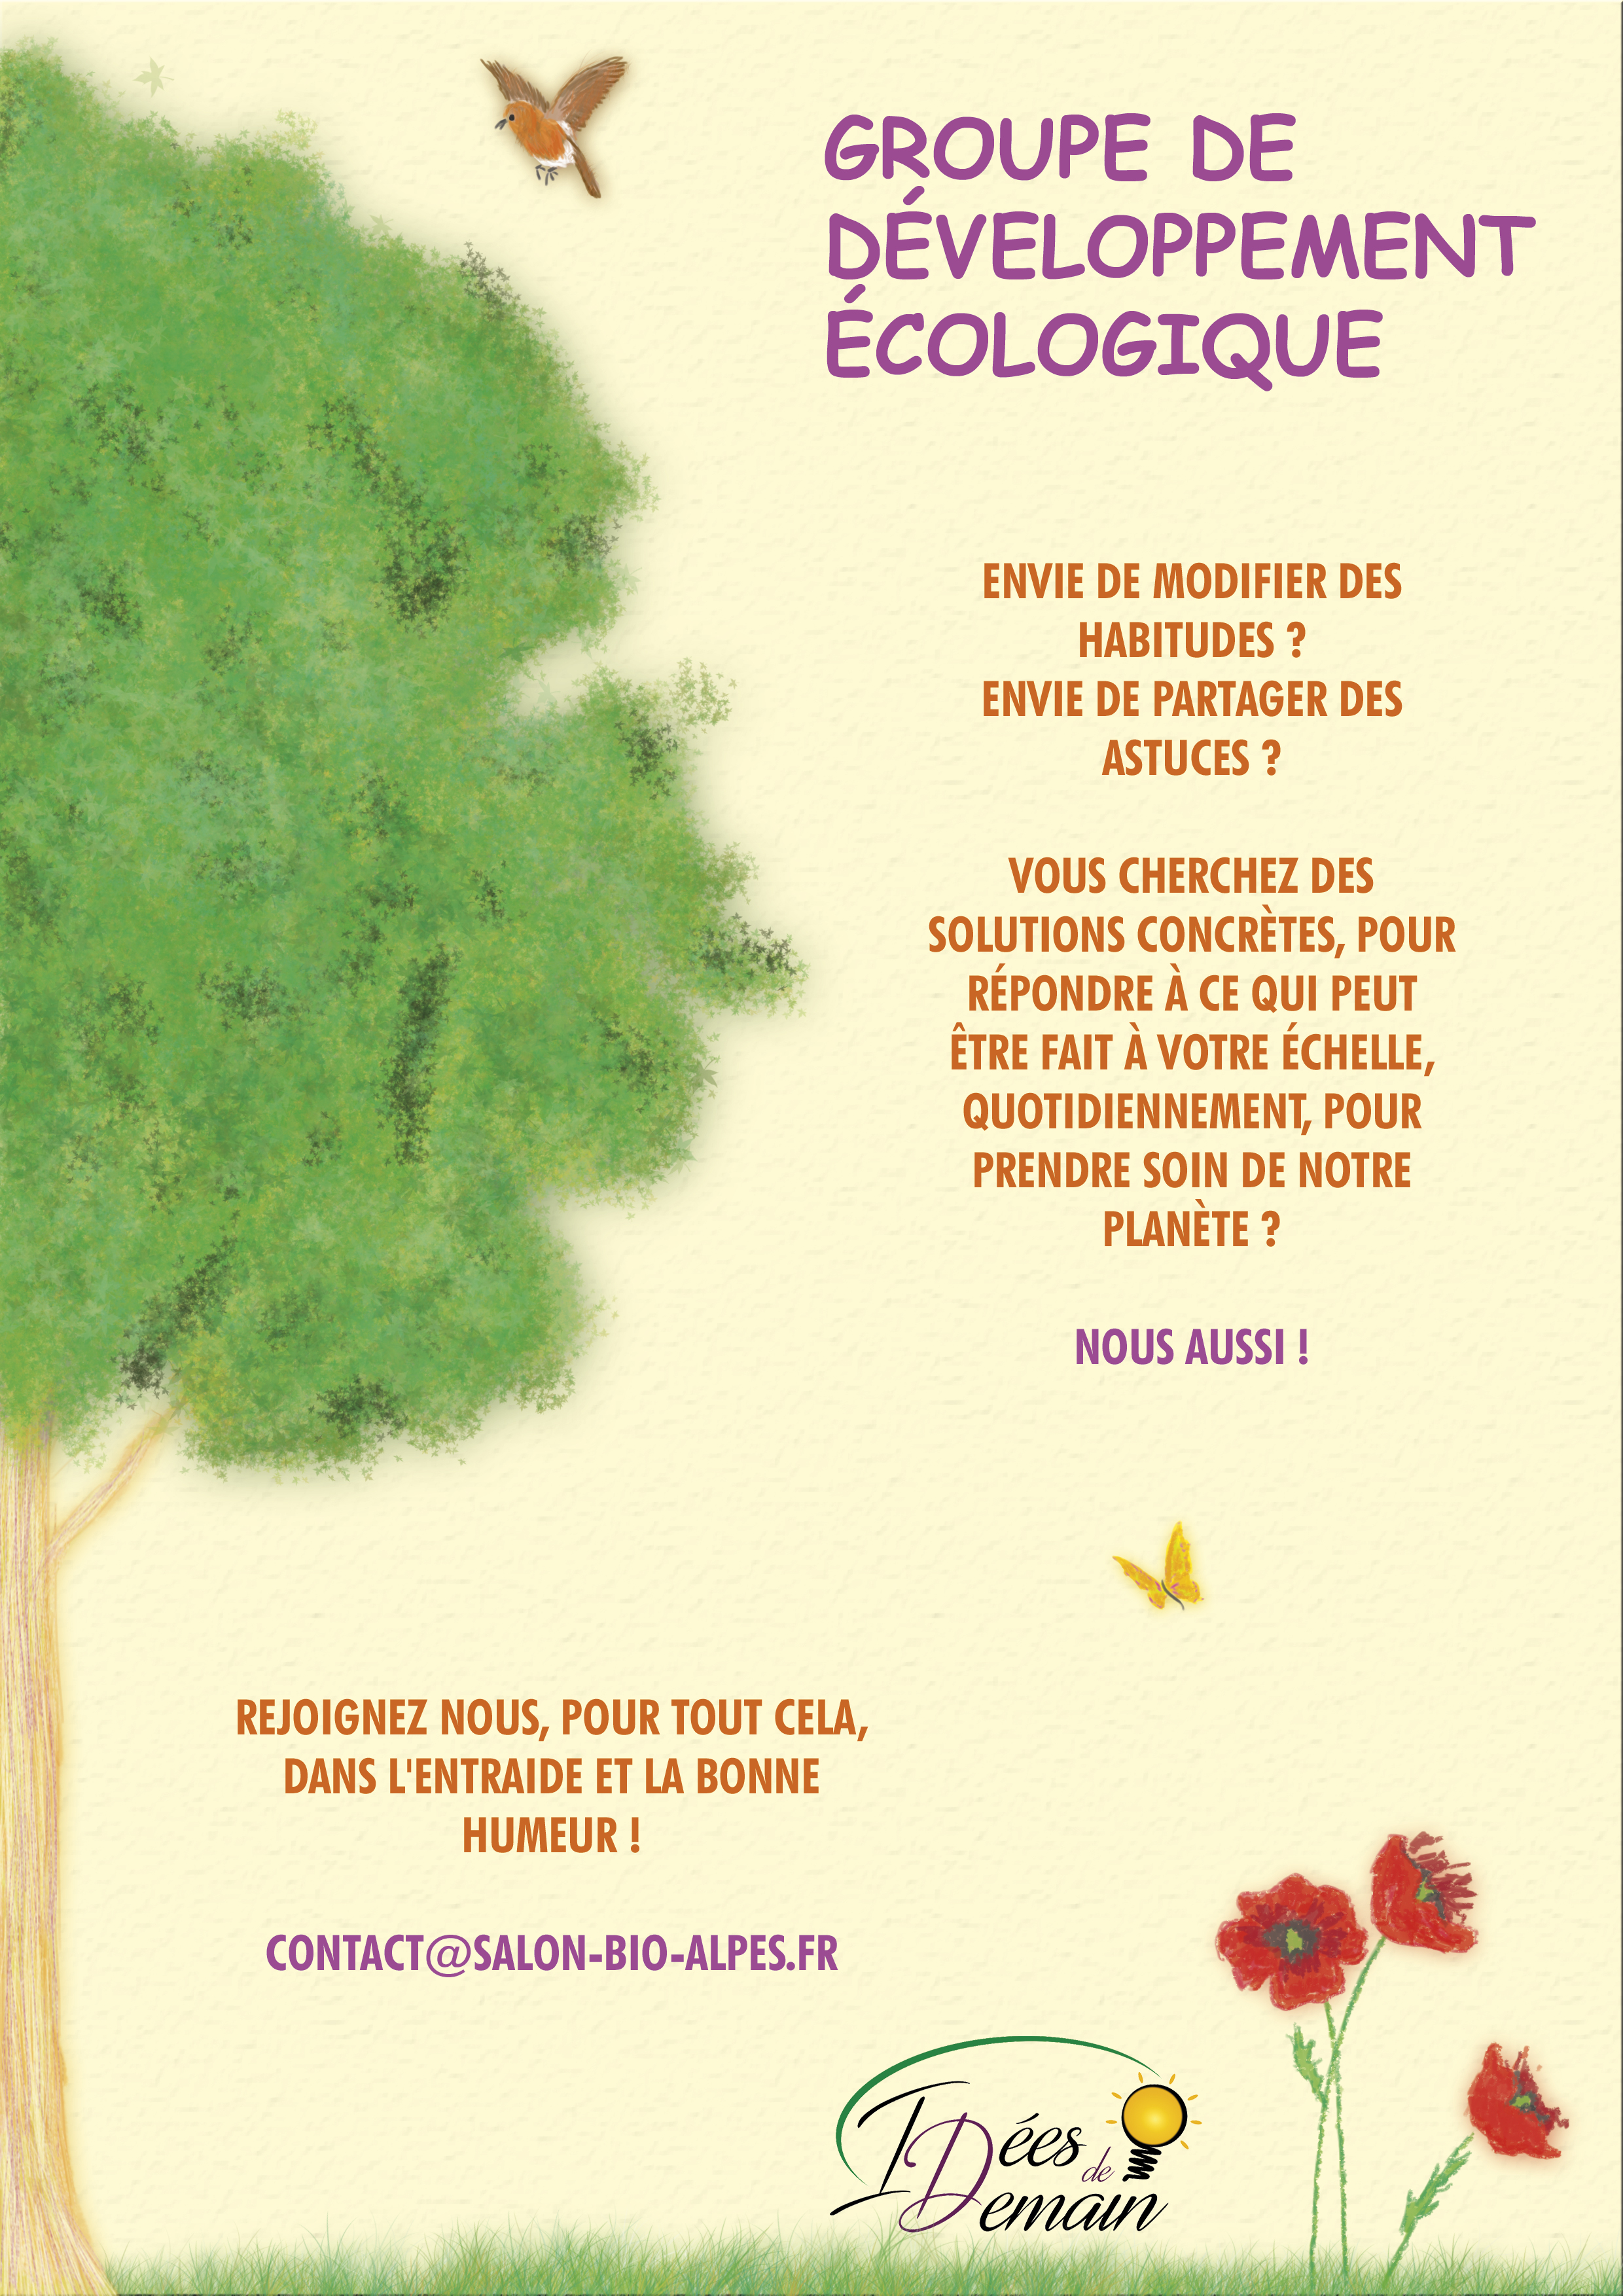 Flyer qui présente le groupe de développement écologique des Hautes-Alpes